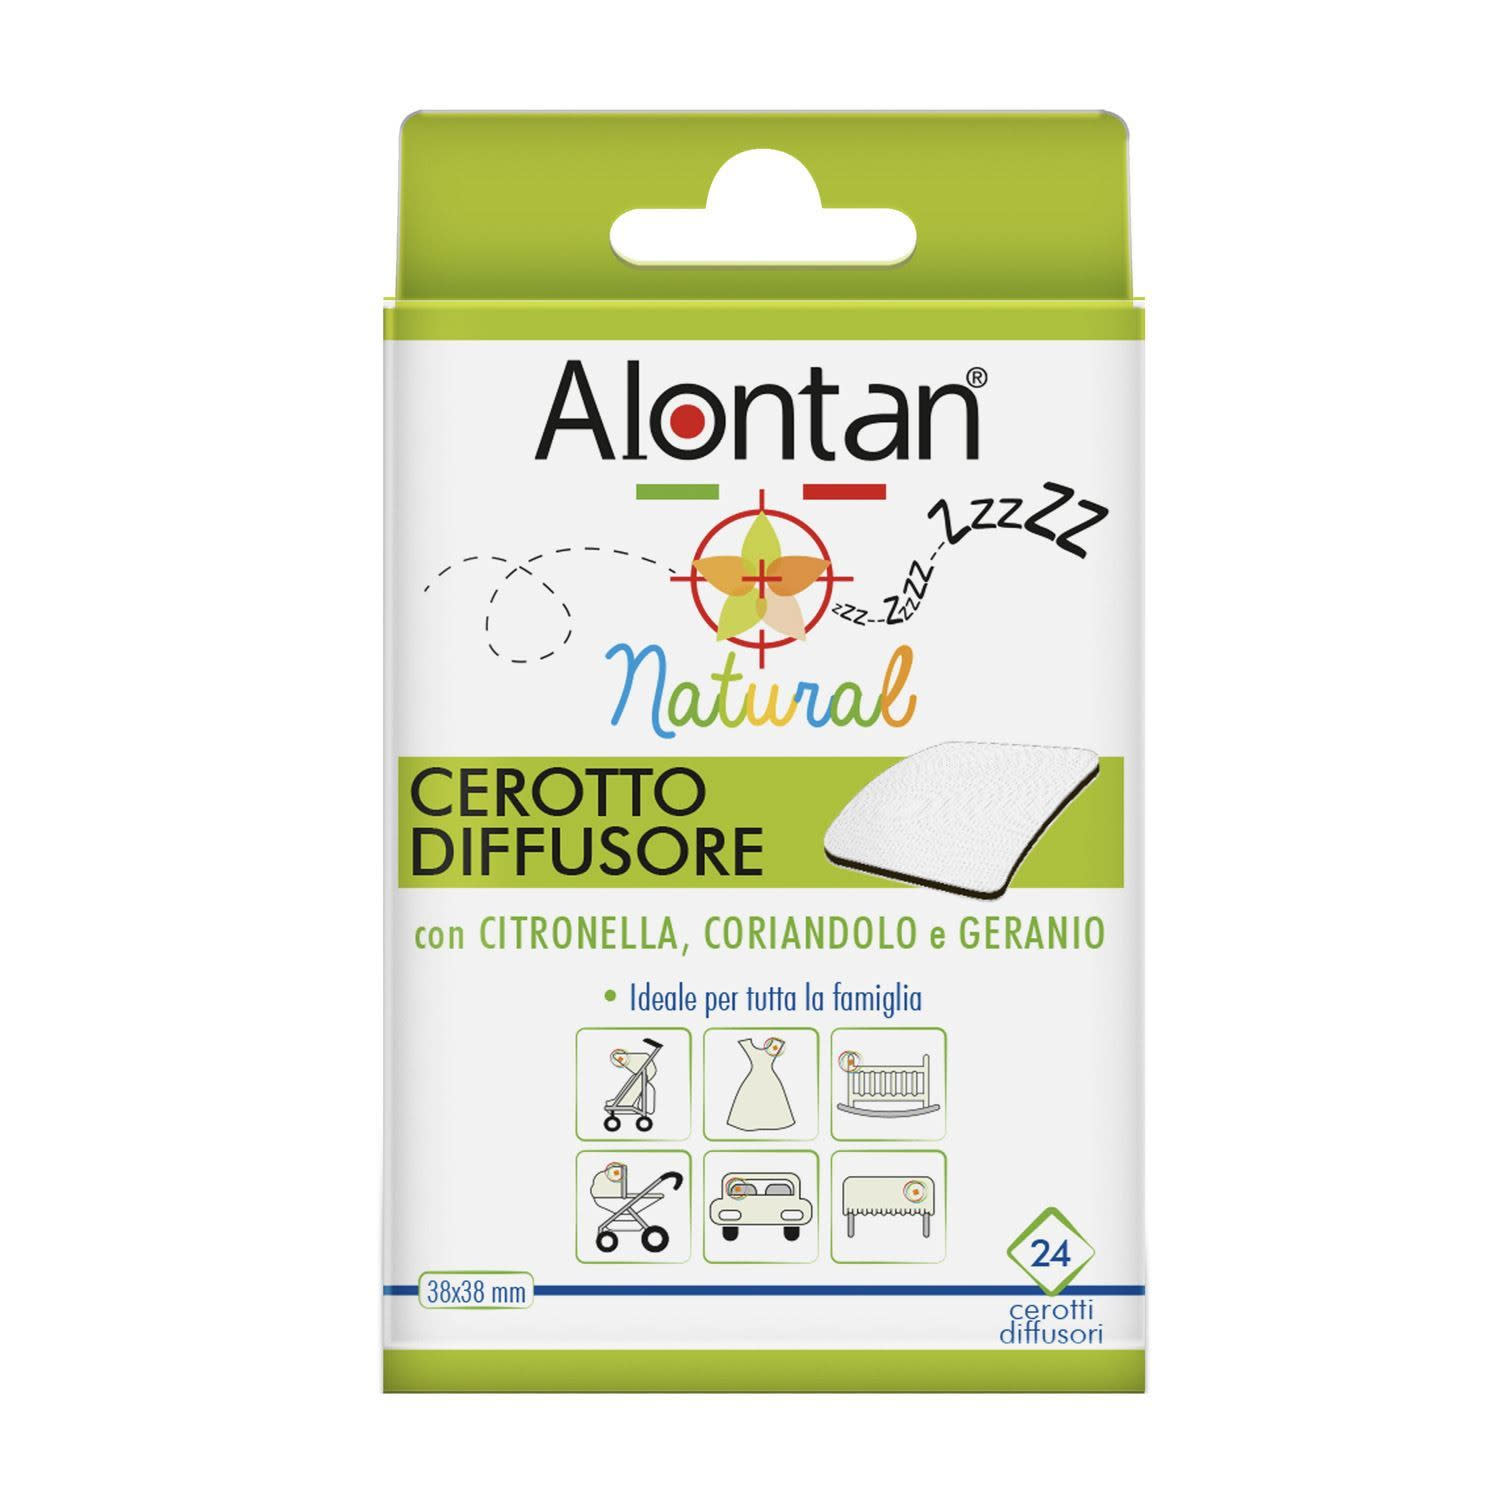 935381158 - Alontan Natural Cerotto Diffusore Citronella Anti zanzare - 7864792_2.jpg